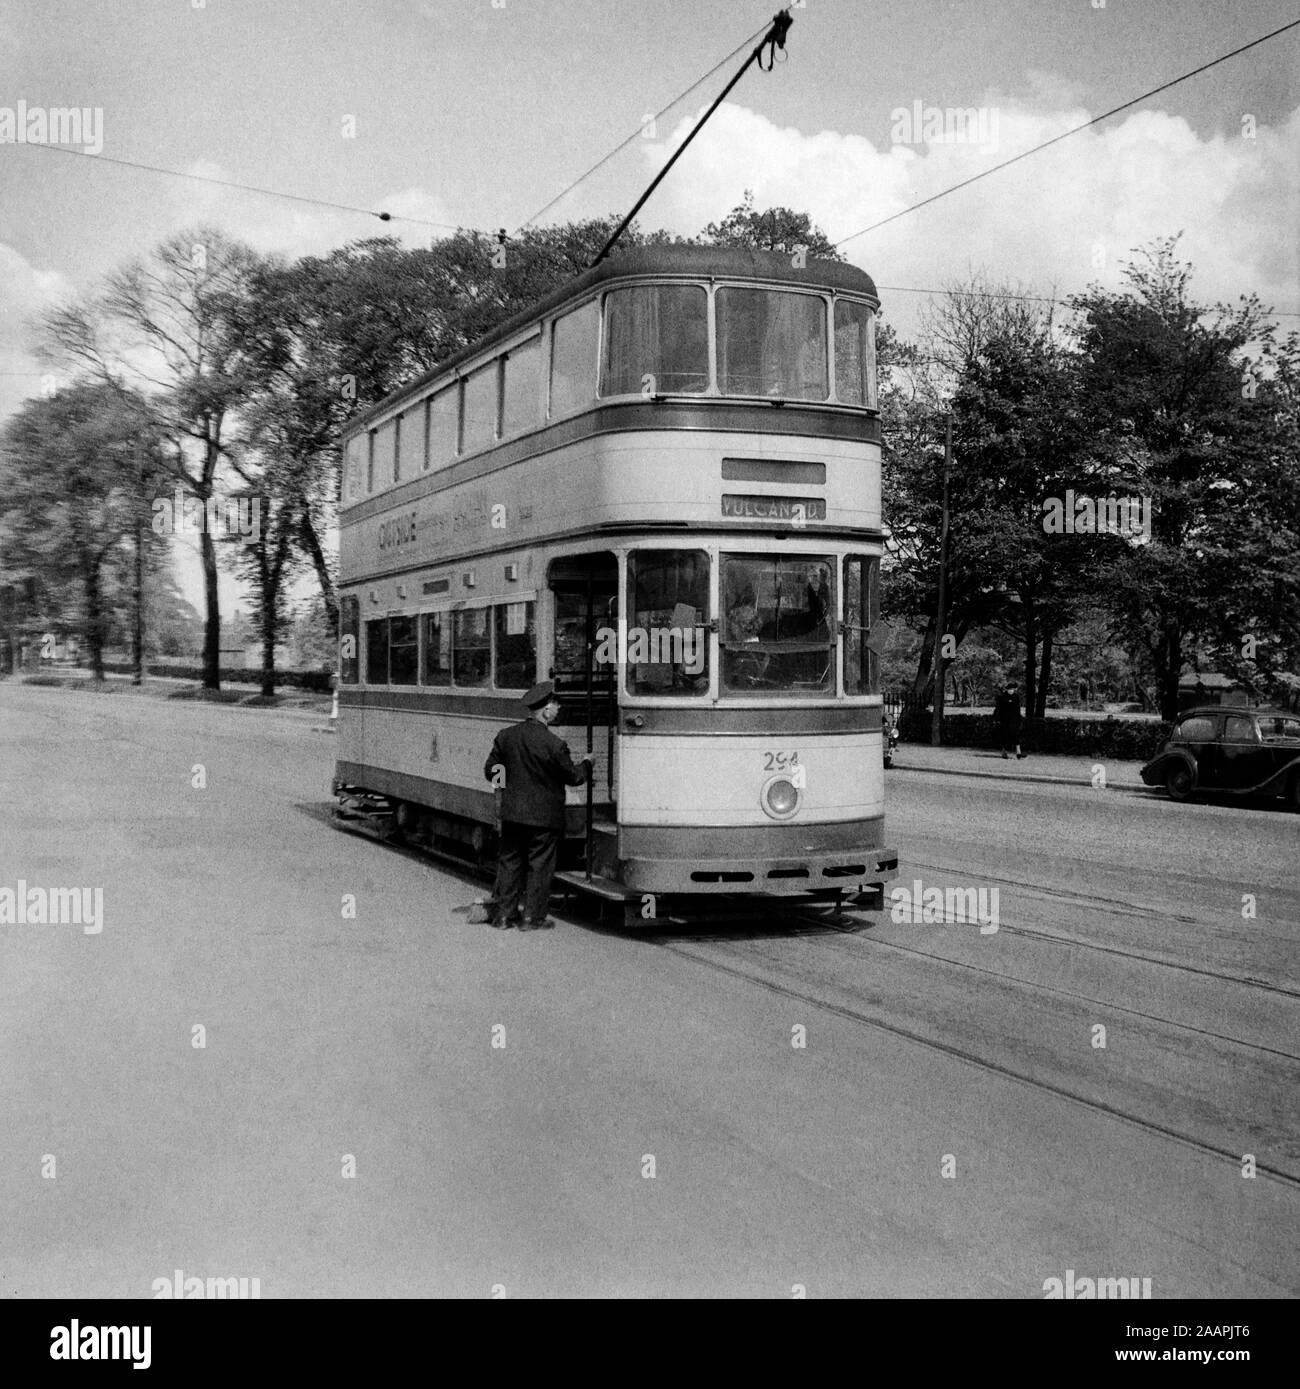 Sheffield Corporation Tramway Standard no 294 à son terminus et aller sur la route de Vulcan Road. Image prise au cours des années 1950. Veuillez noter qu'en raison de l'âge de l'image, il peut y avoir des imperfections montrant. Banque D'Images